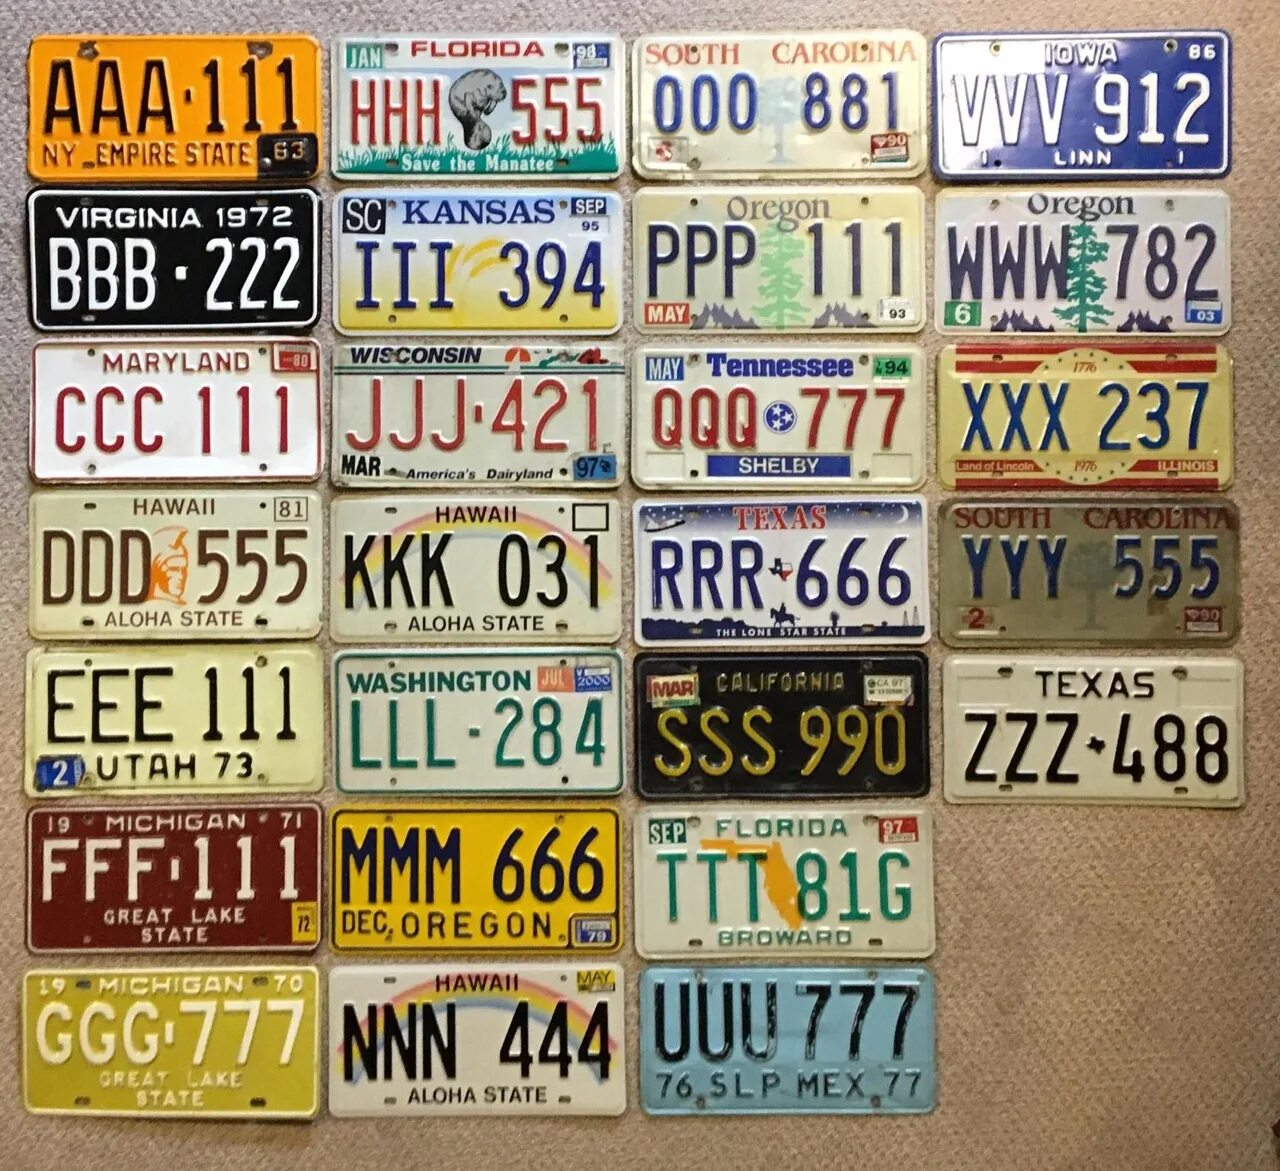 Пример американского номера. Автомобильные номера. Автомобильные номера США. Американский номерной знак. Американские номера авто.